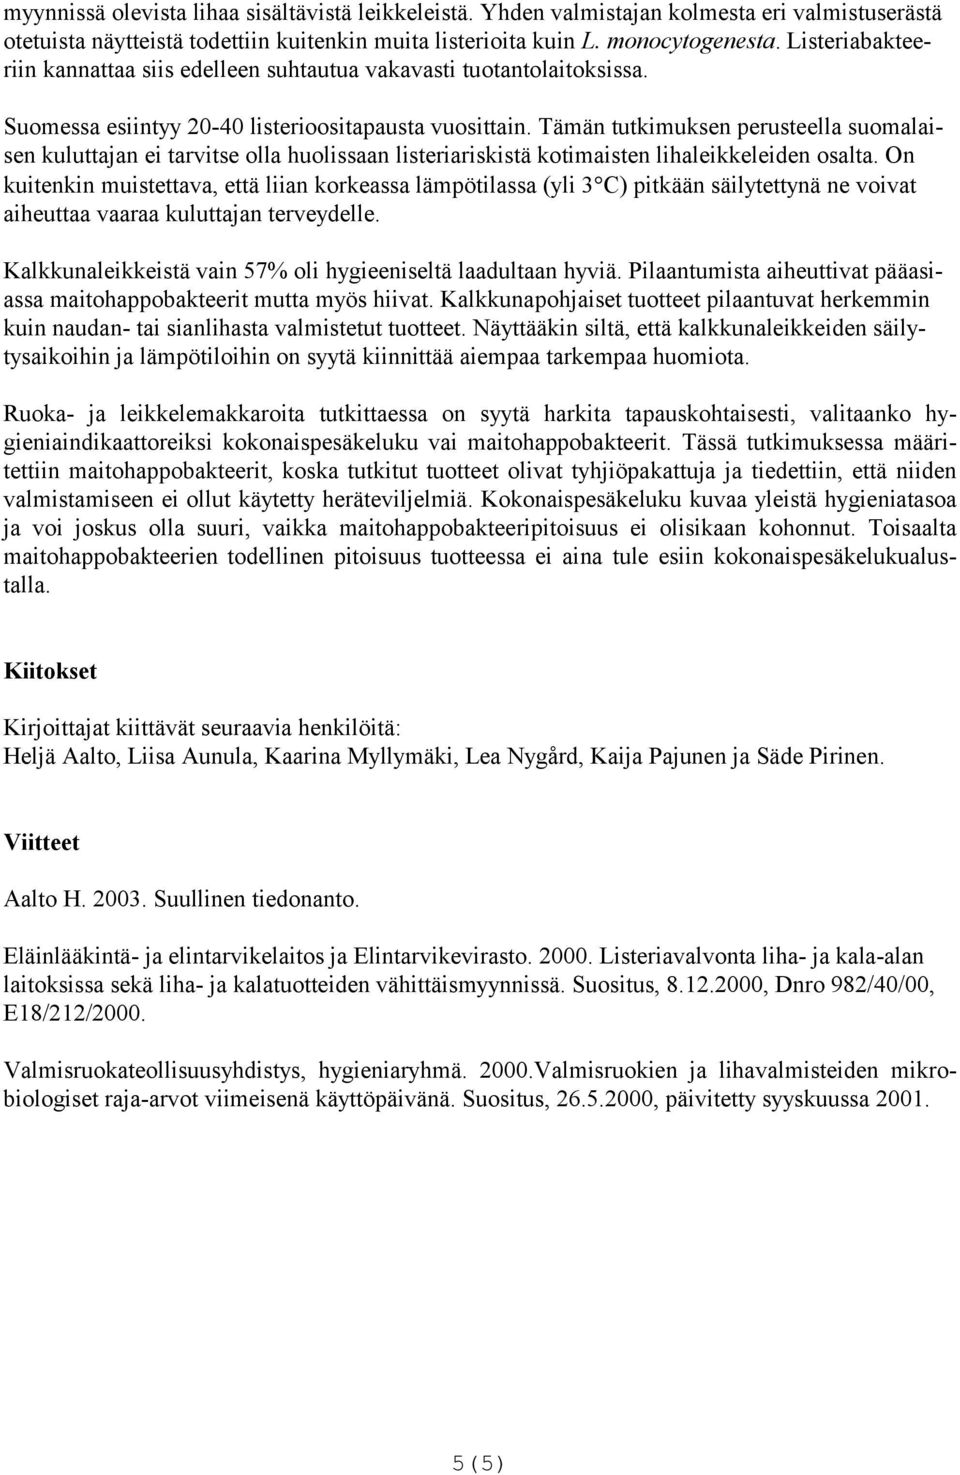 Tämän tutkimuksen perusteella suomalaisen kuluttajan ei tarvitse olla huolissaan listeriariskistä kotimaisten lihaleikkeleiden osalta.